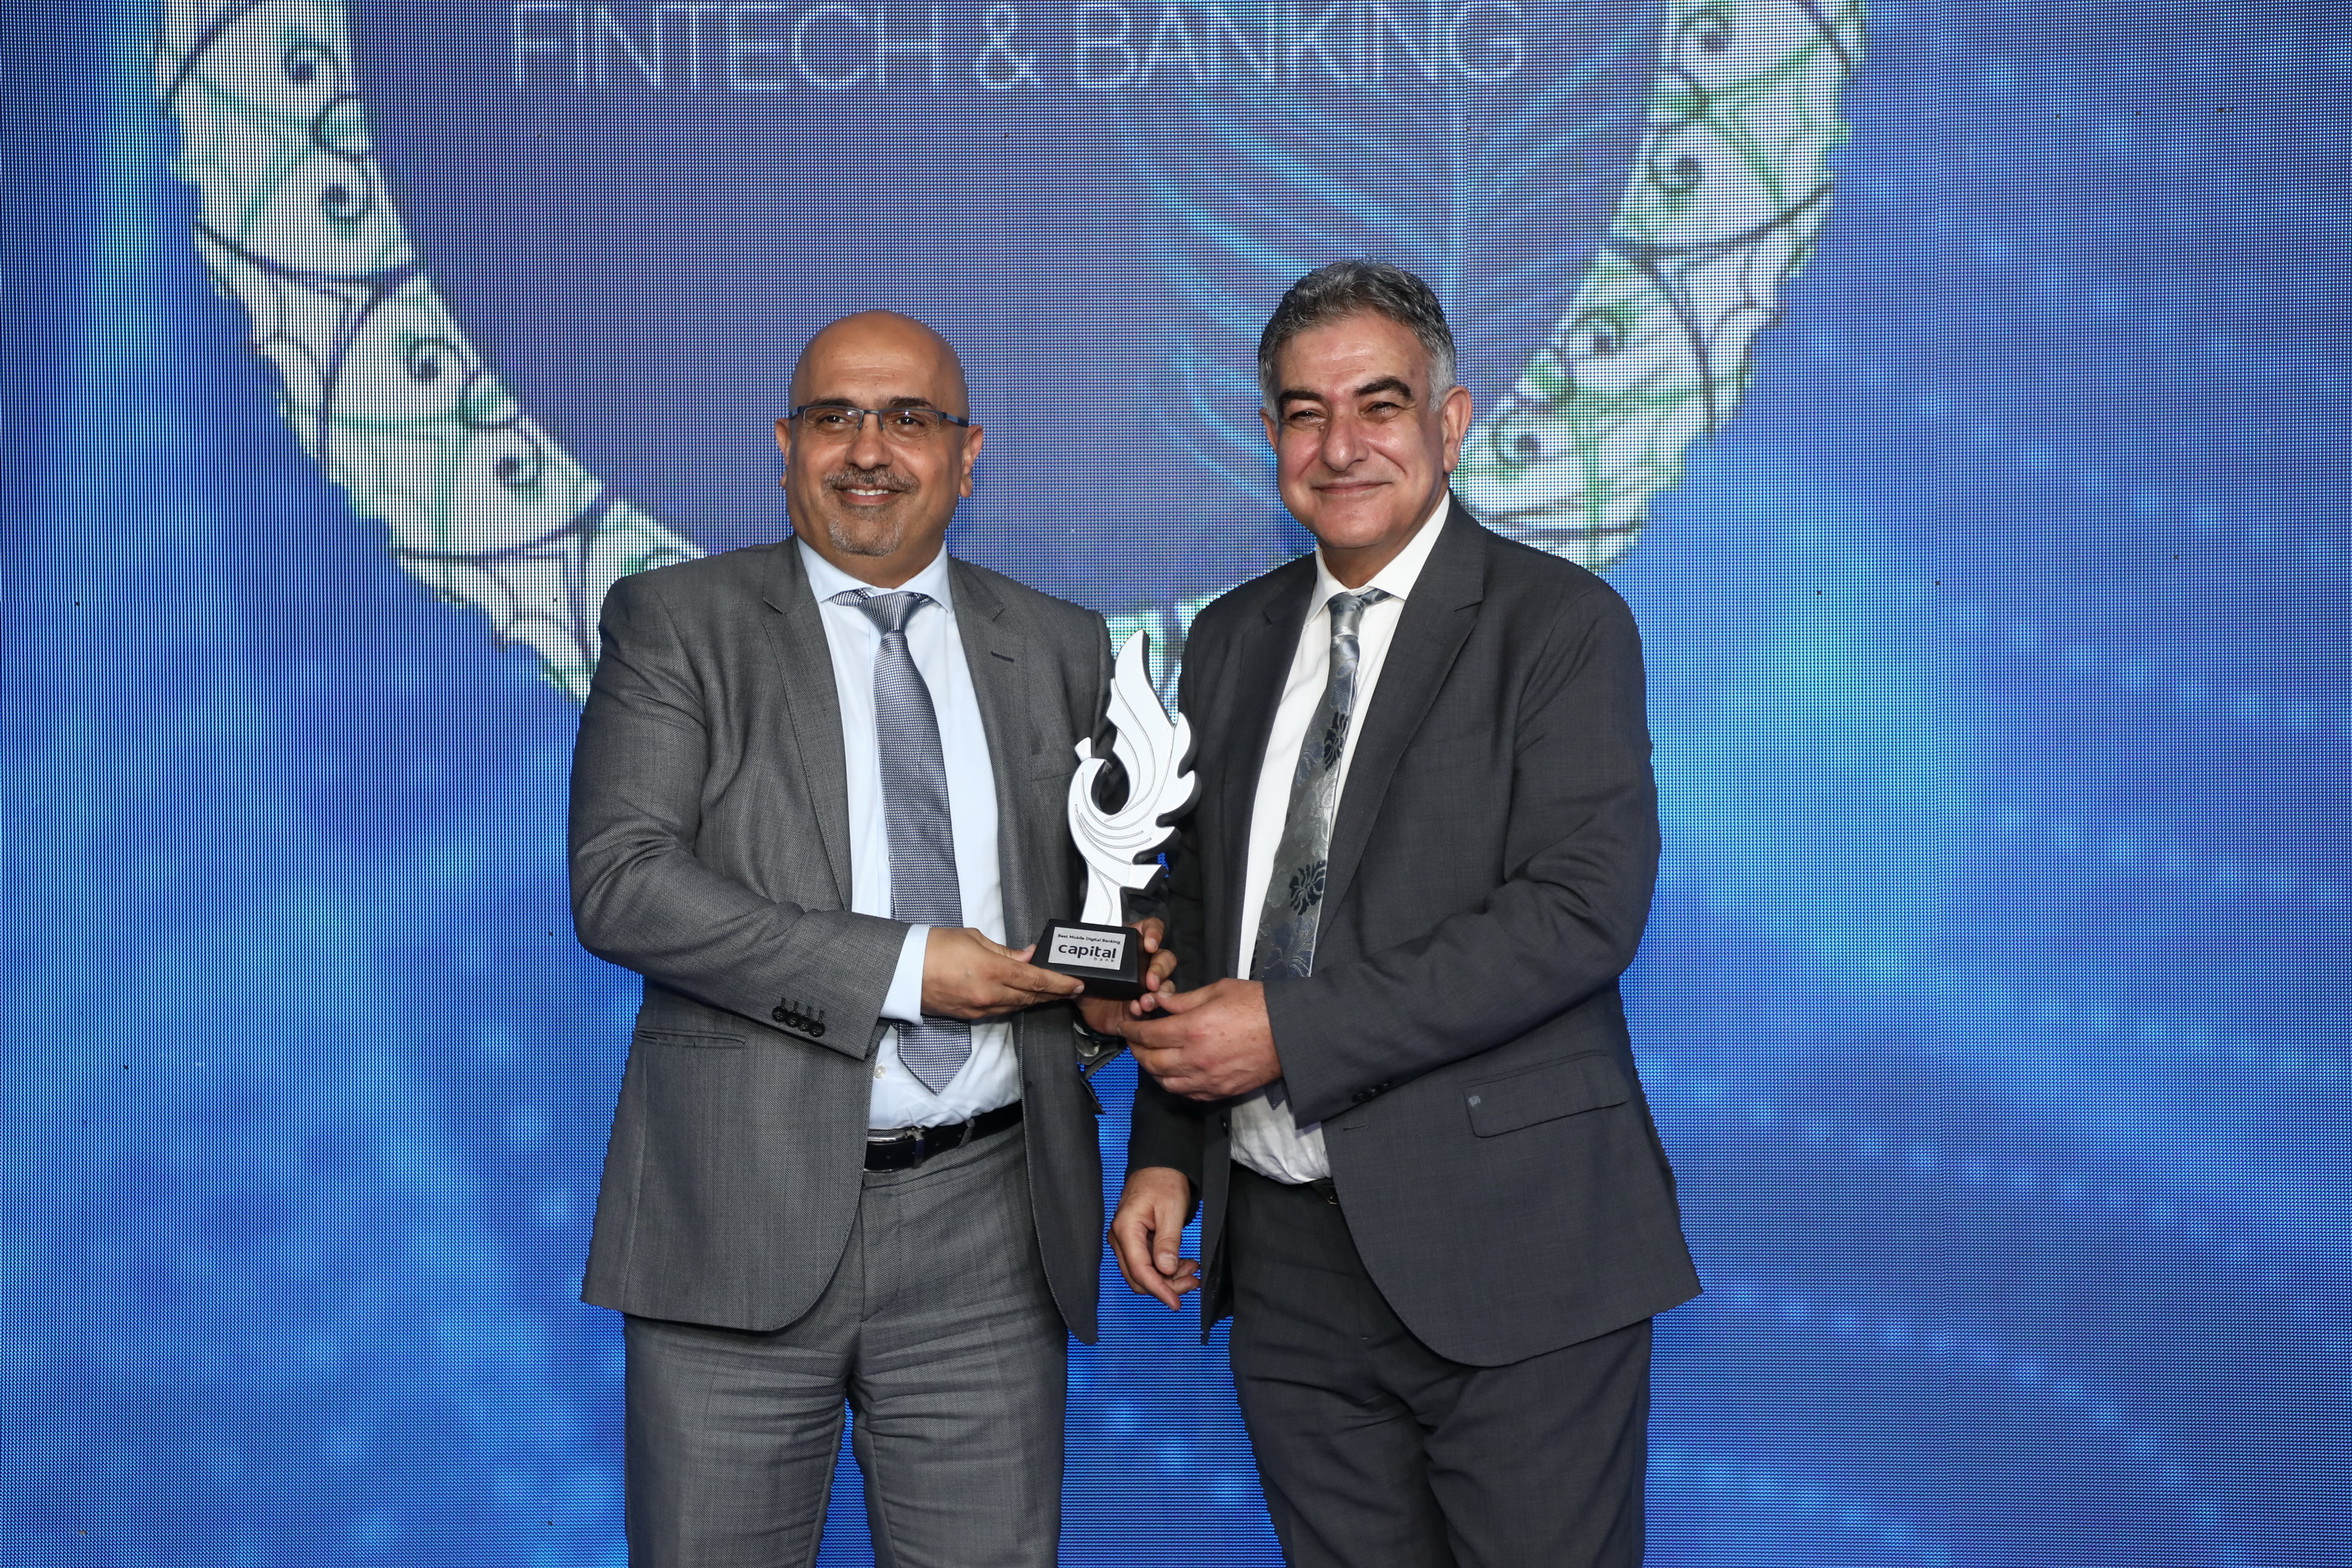 كابيتال بنك يفوز بجائزة الطاووس لأفضل خدمة مصرفية رقمية عبر الموبايل خلال فعاليات قمة التكنولوجيا المالية في الشرق الأوسط